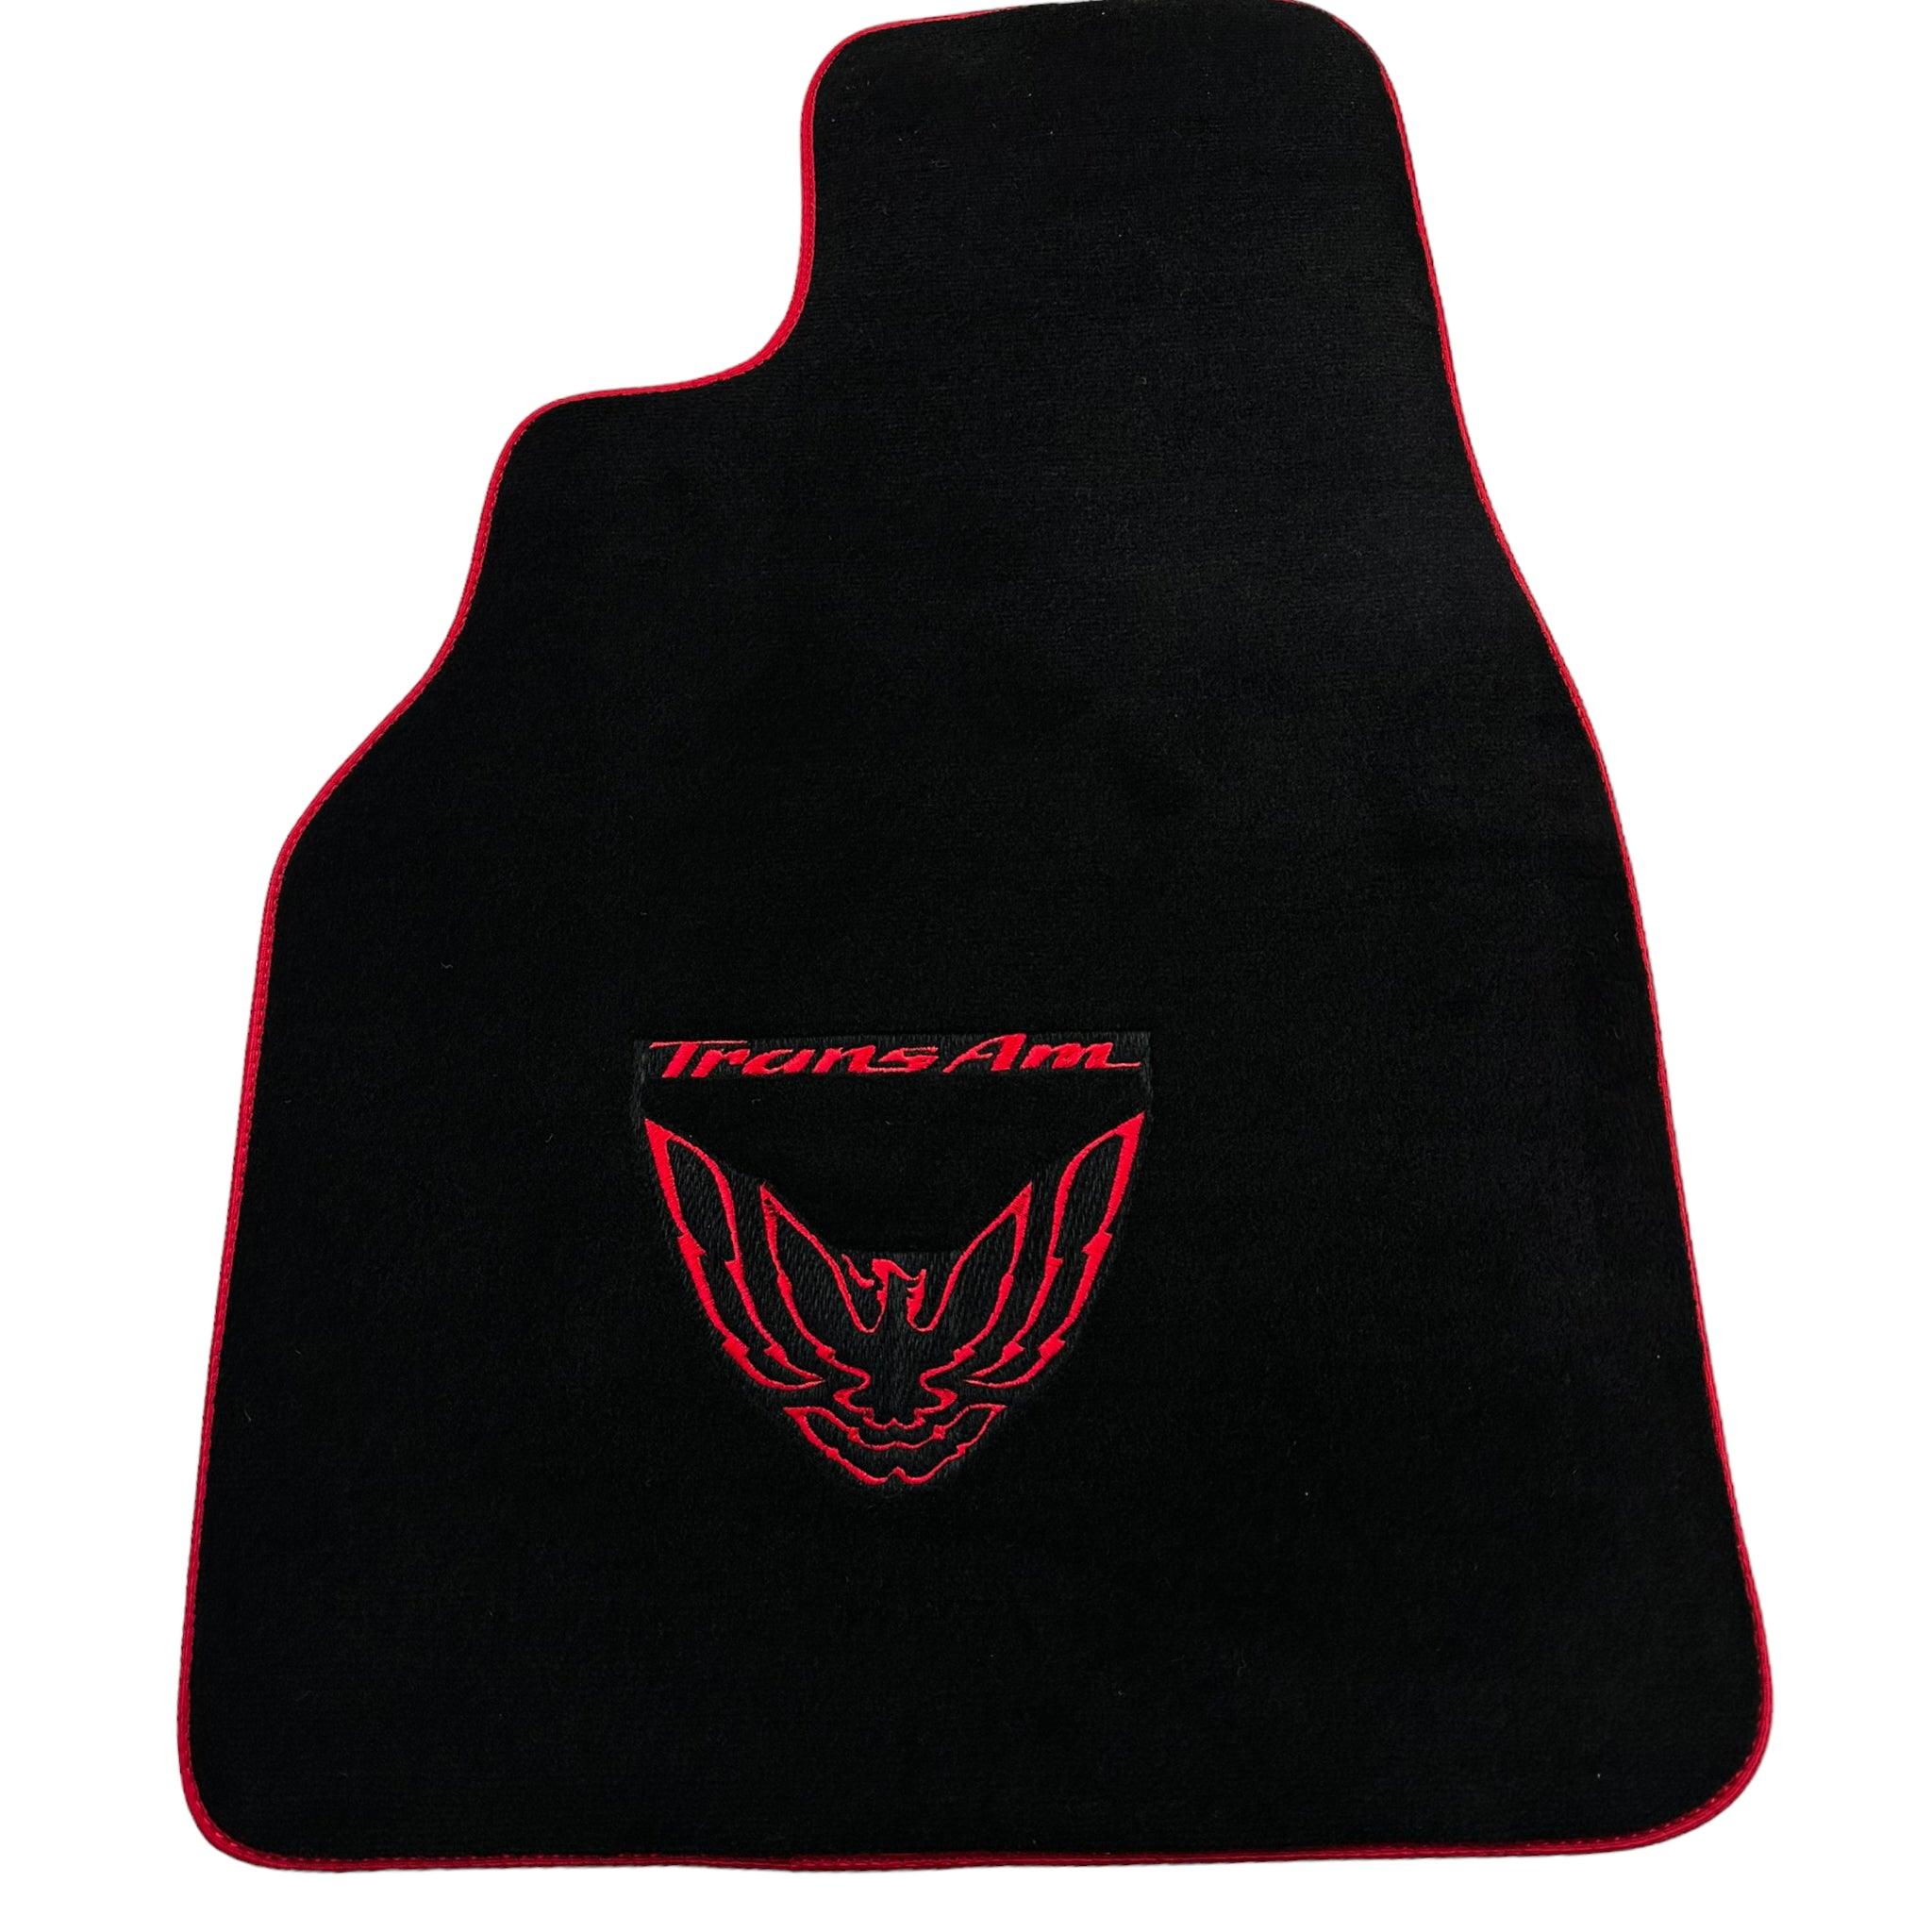 Black Floor Mats Red Trim for Pontiac FireBird (1993-2002) Trans Am